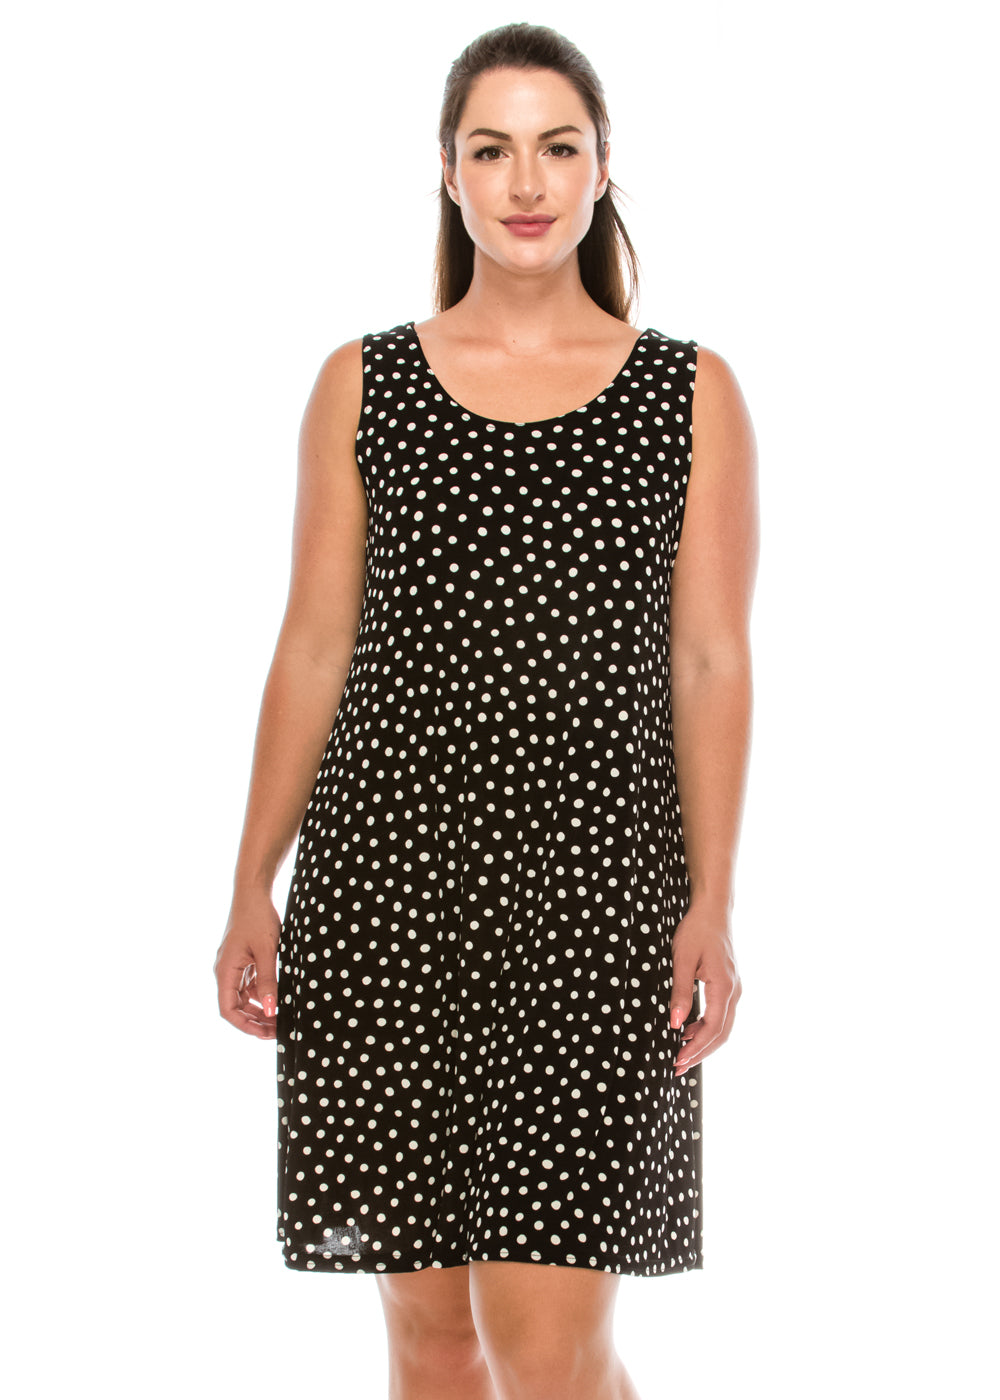 Jostar Women's Stretchy Missy Tank Dress Print, 703BN-TP-W032 - Jostar Online